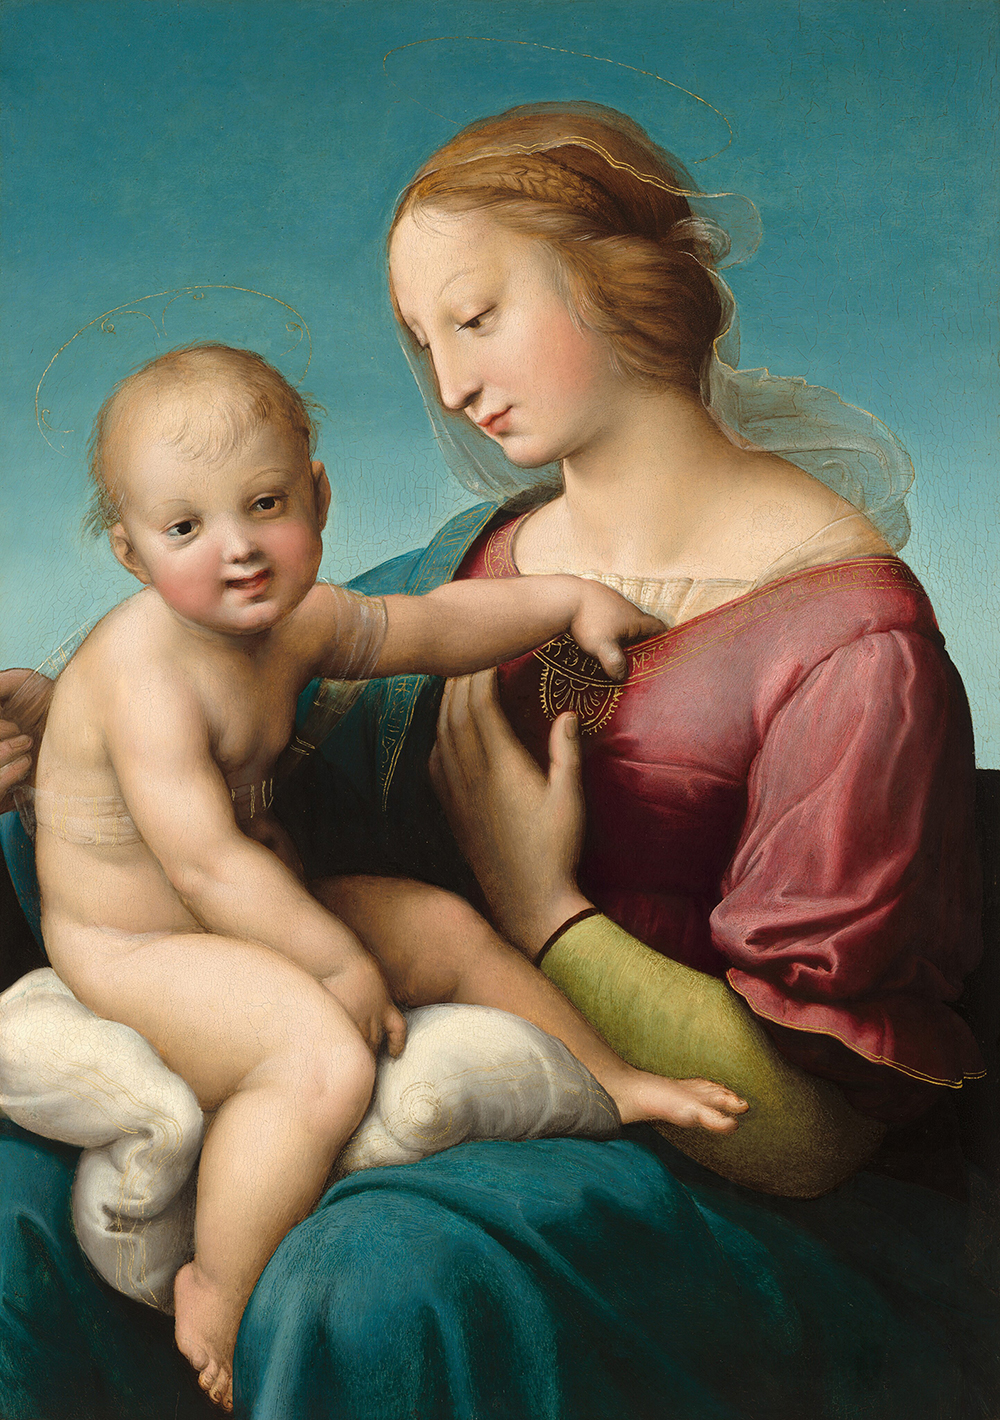 Una mujer sostiene y mira hacia un niño pequeño desnudo, que se sienta en su regazo y nos mira, sonriendo, en esta pintura vertical.